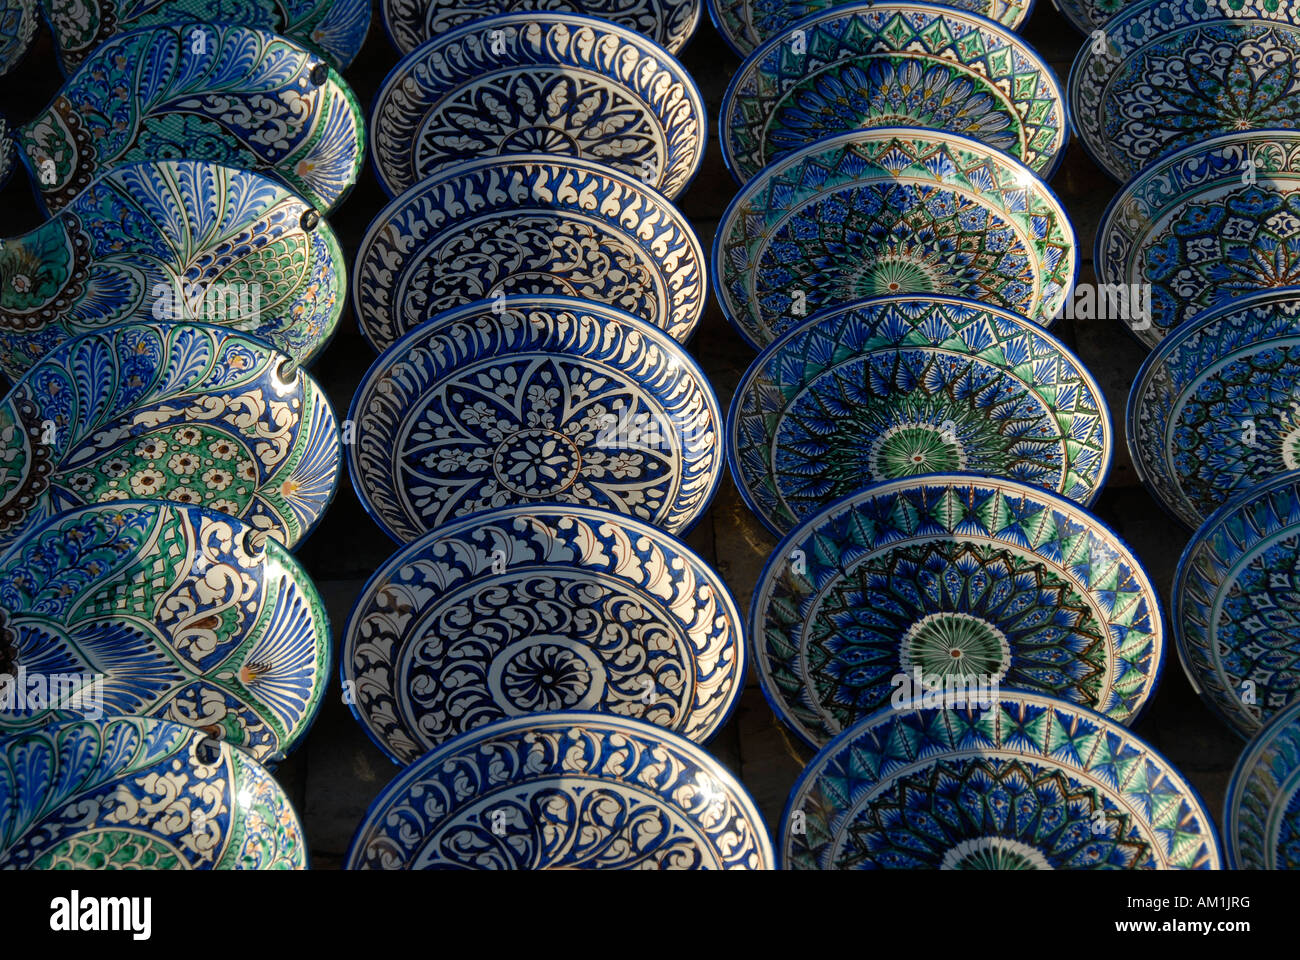 Usbekische Keramikplatten mit feinen blauen und grünen Muster Buchara Usbekistan Stockfoto